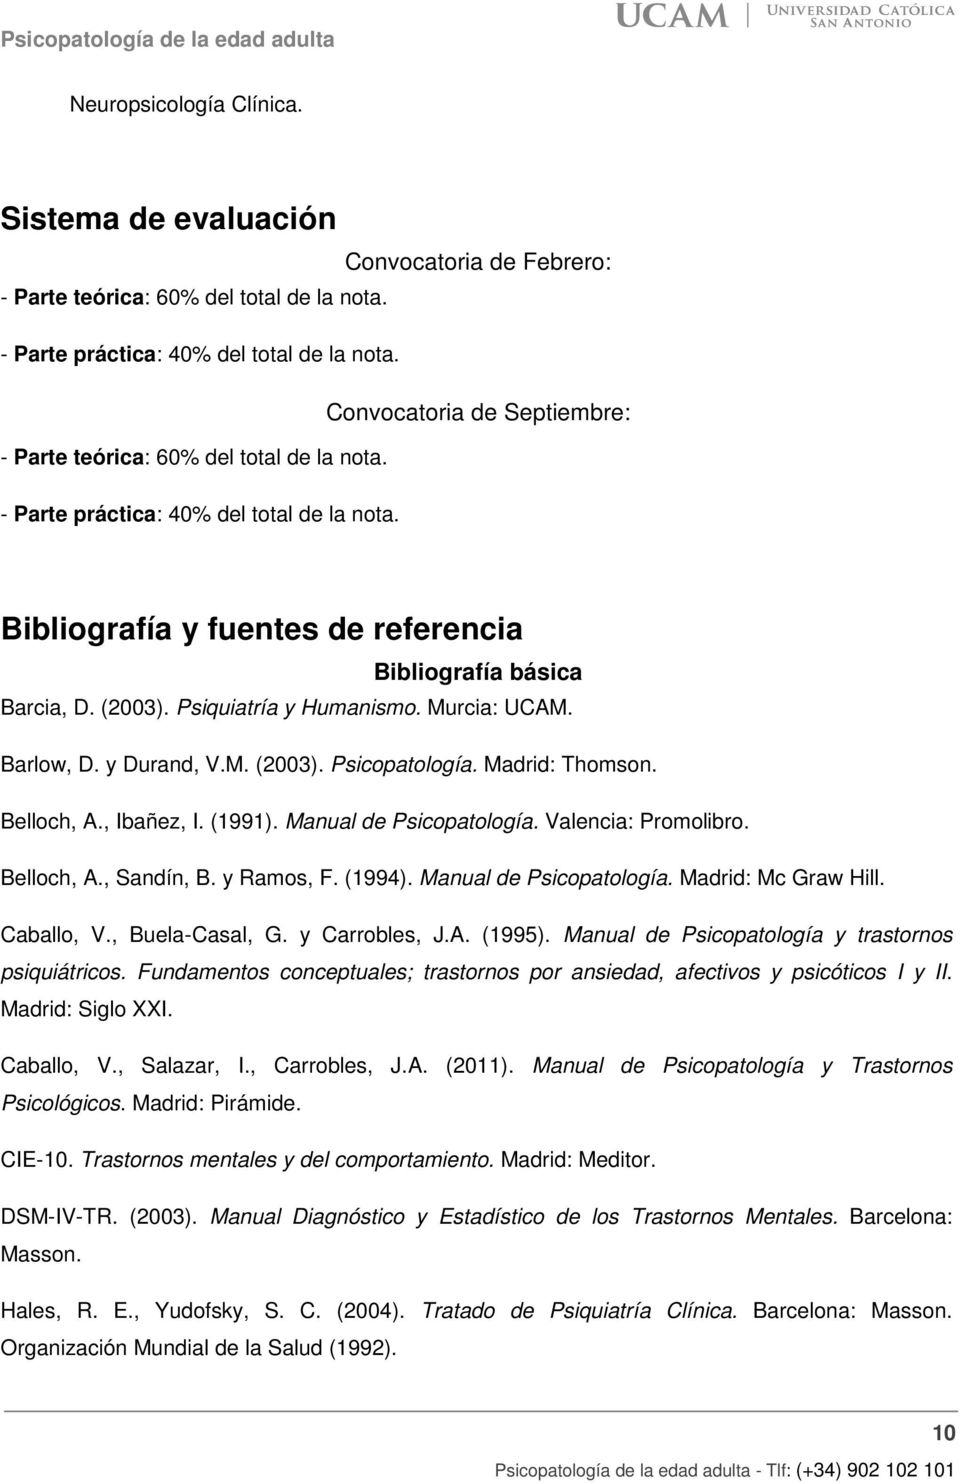 Psiquiatría y Humanismo. Murcia: UCAM. Barlow, D. y Durand, V.M. (2003). Psicopatología. Madrid: Thomson. Belloch, A., Ibañez, I. (1991). Manual de Psicopatología. Valencia: Promolibro. Belloch, A., Sandín, B.